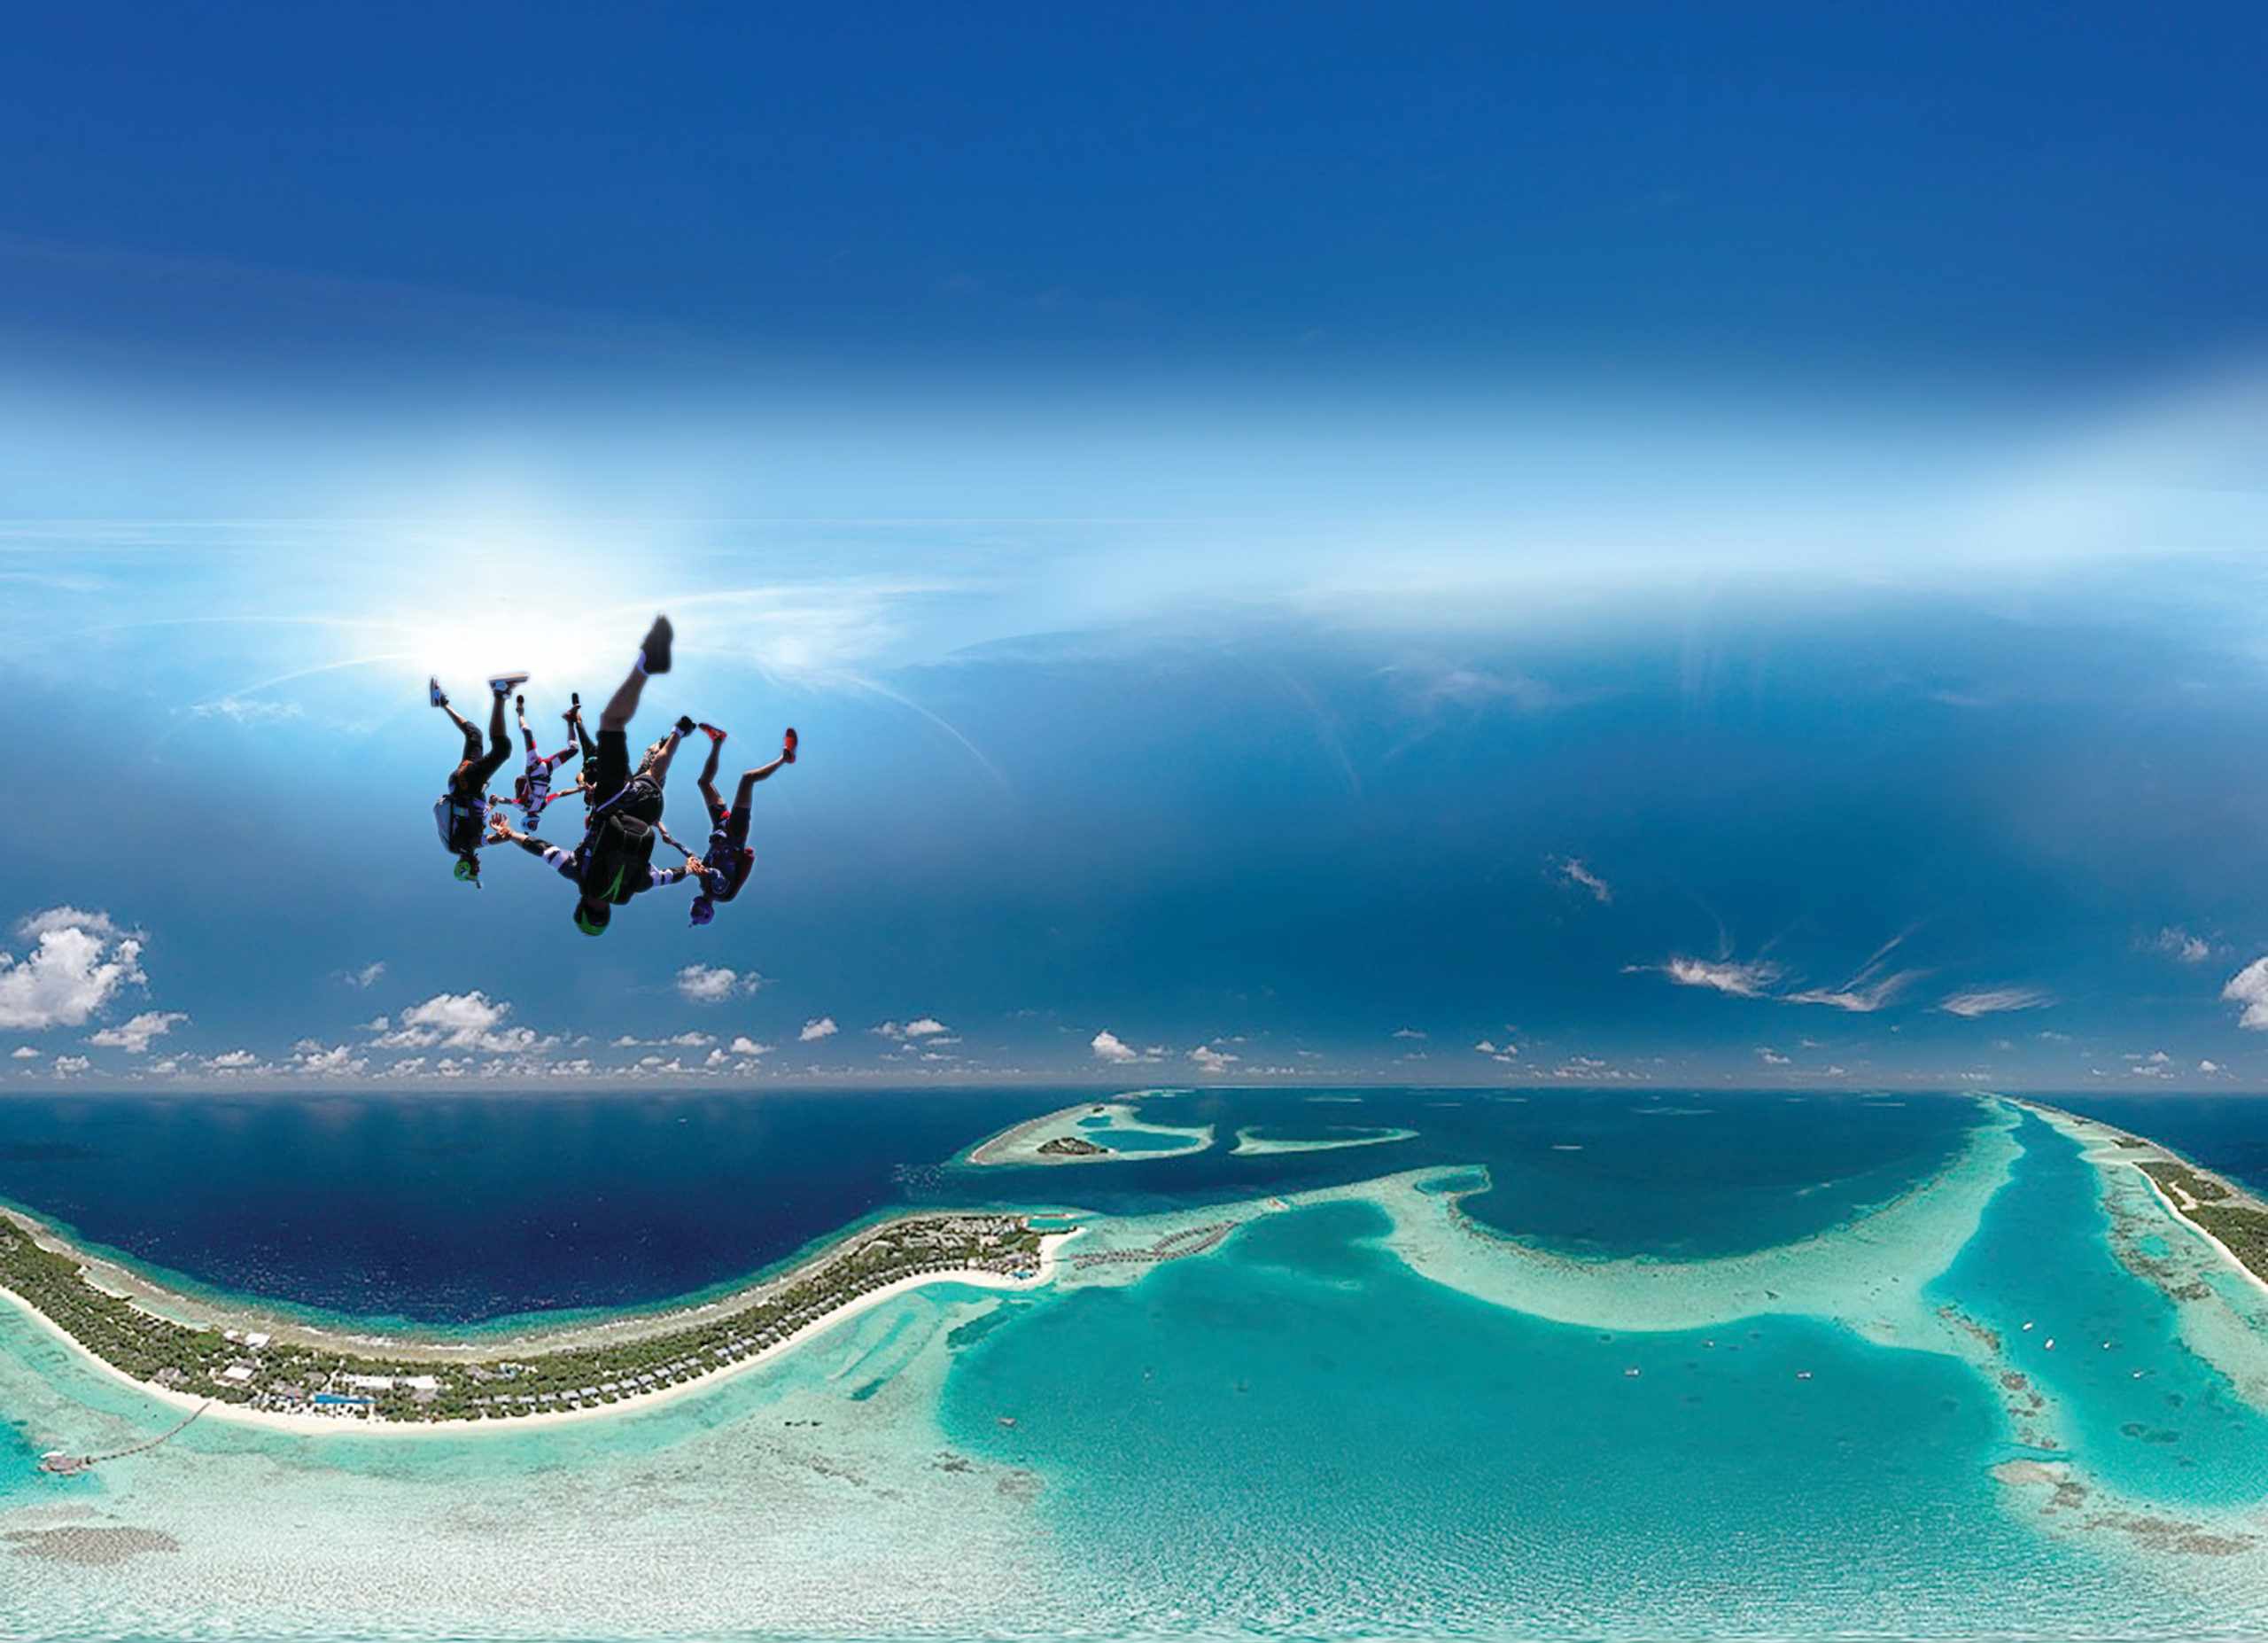 maldives kandima skydiving programme uae